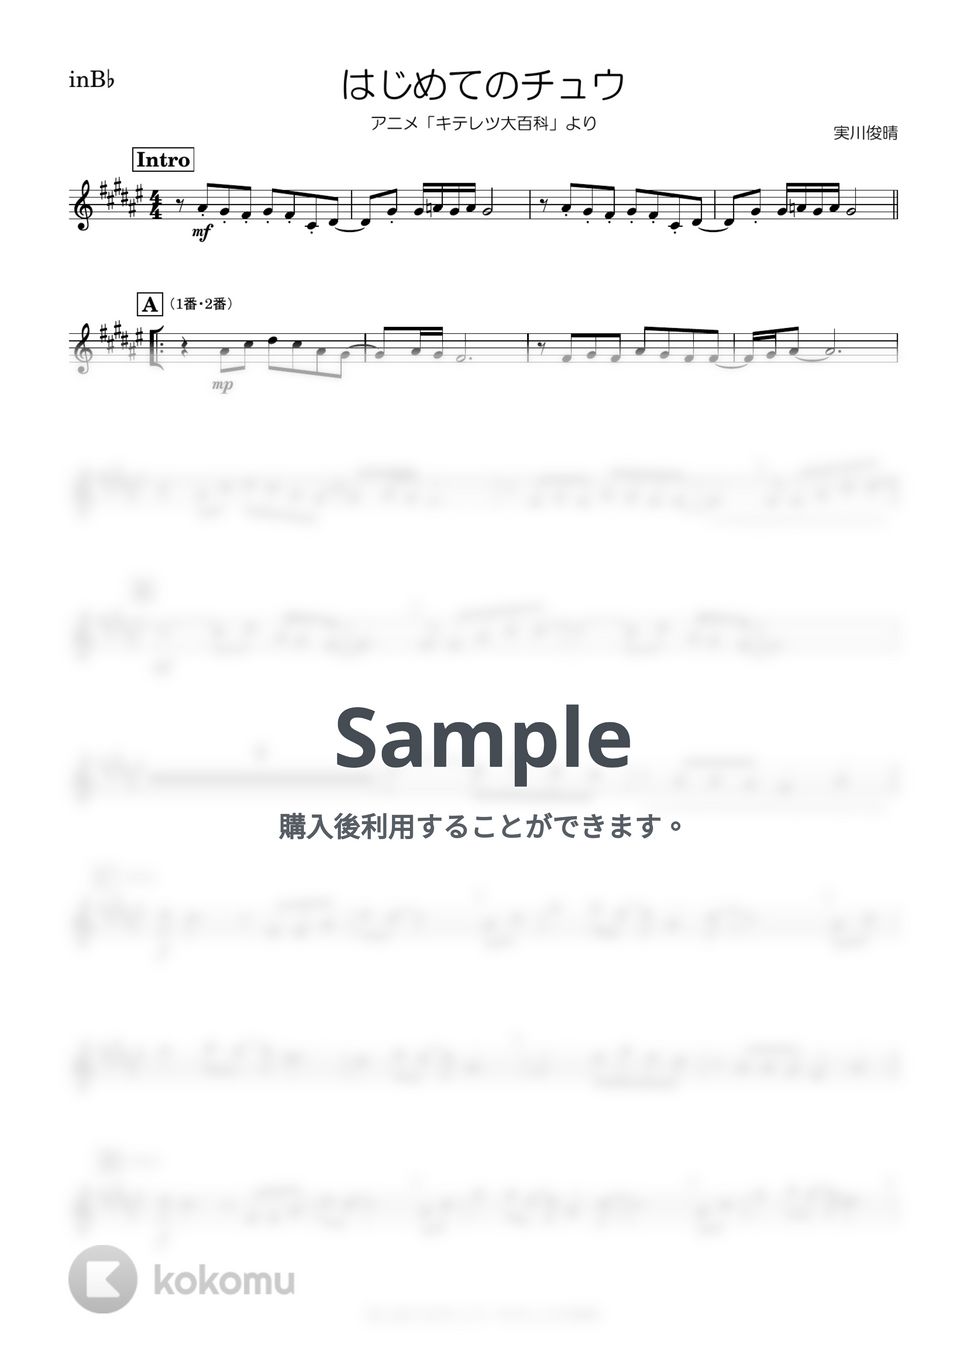 キテレツ大百科 - はじめてのチュウ (B♭) by kanamusic